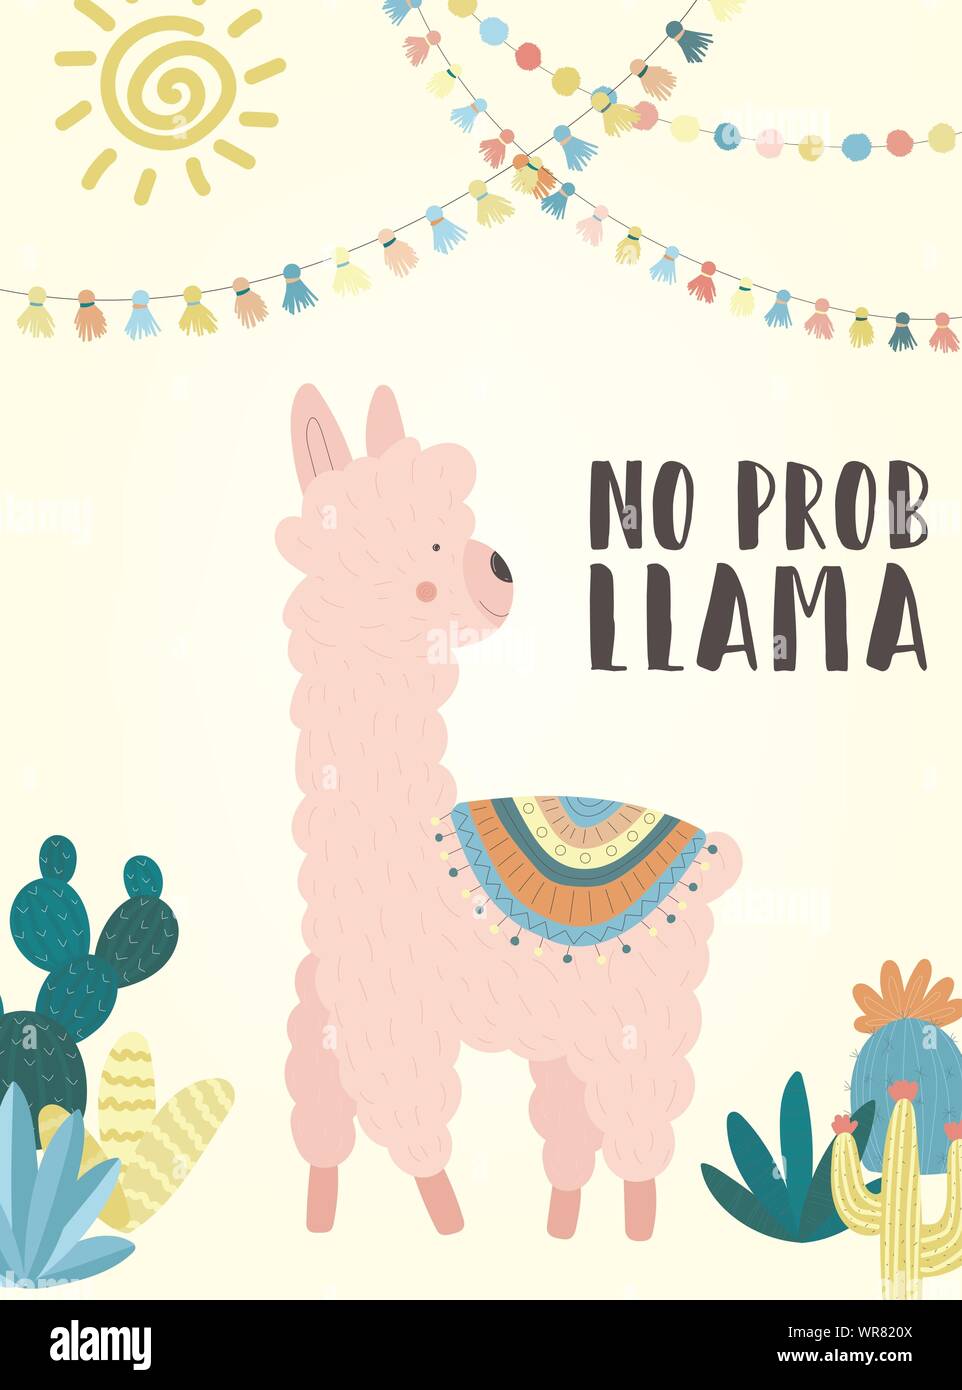 Vector Illustration einer Handgezeichneten rosa Alpaka in nationalen Südamerikanischen Kleidung mit Dekorationen, Kakteen, Sun, Beschriftung kein prob Llama. Bild für Stock Vektor